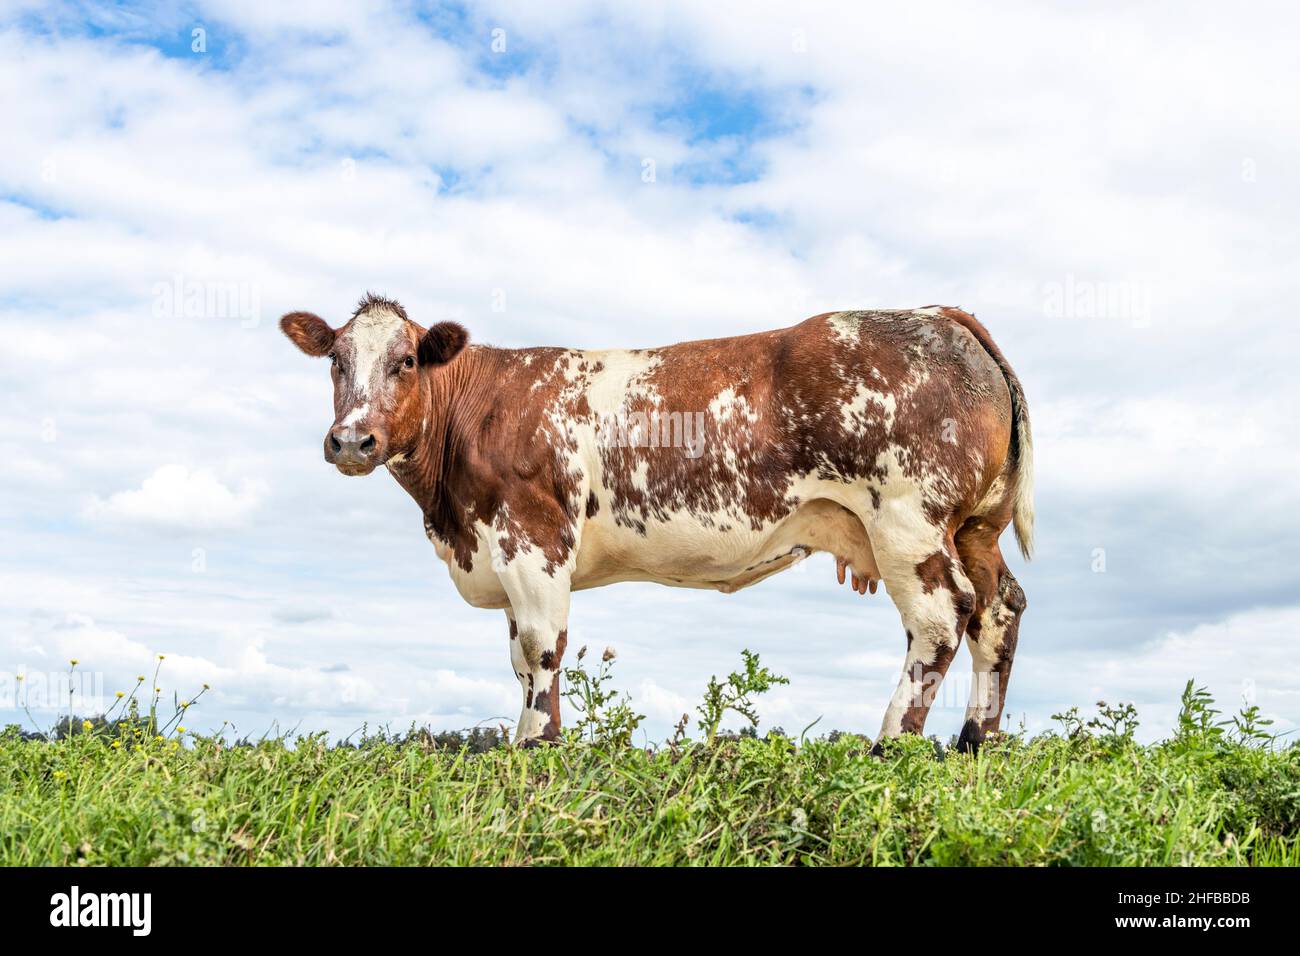 Vaca doble propósito en un campo, de pie sobre hierba verde en un pasto, lechería y carne vaca de ternera, como fondo un cielo azul nublado. Foto de stock